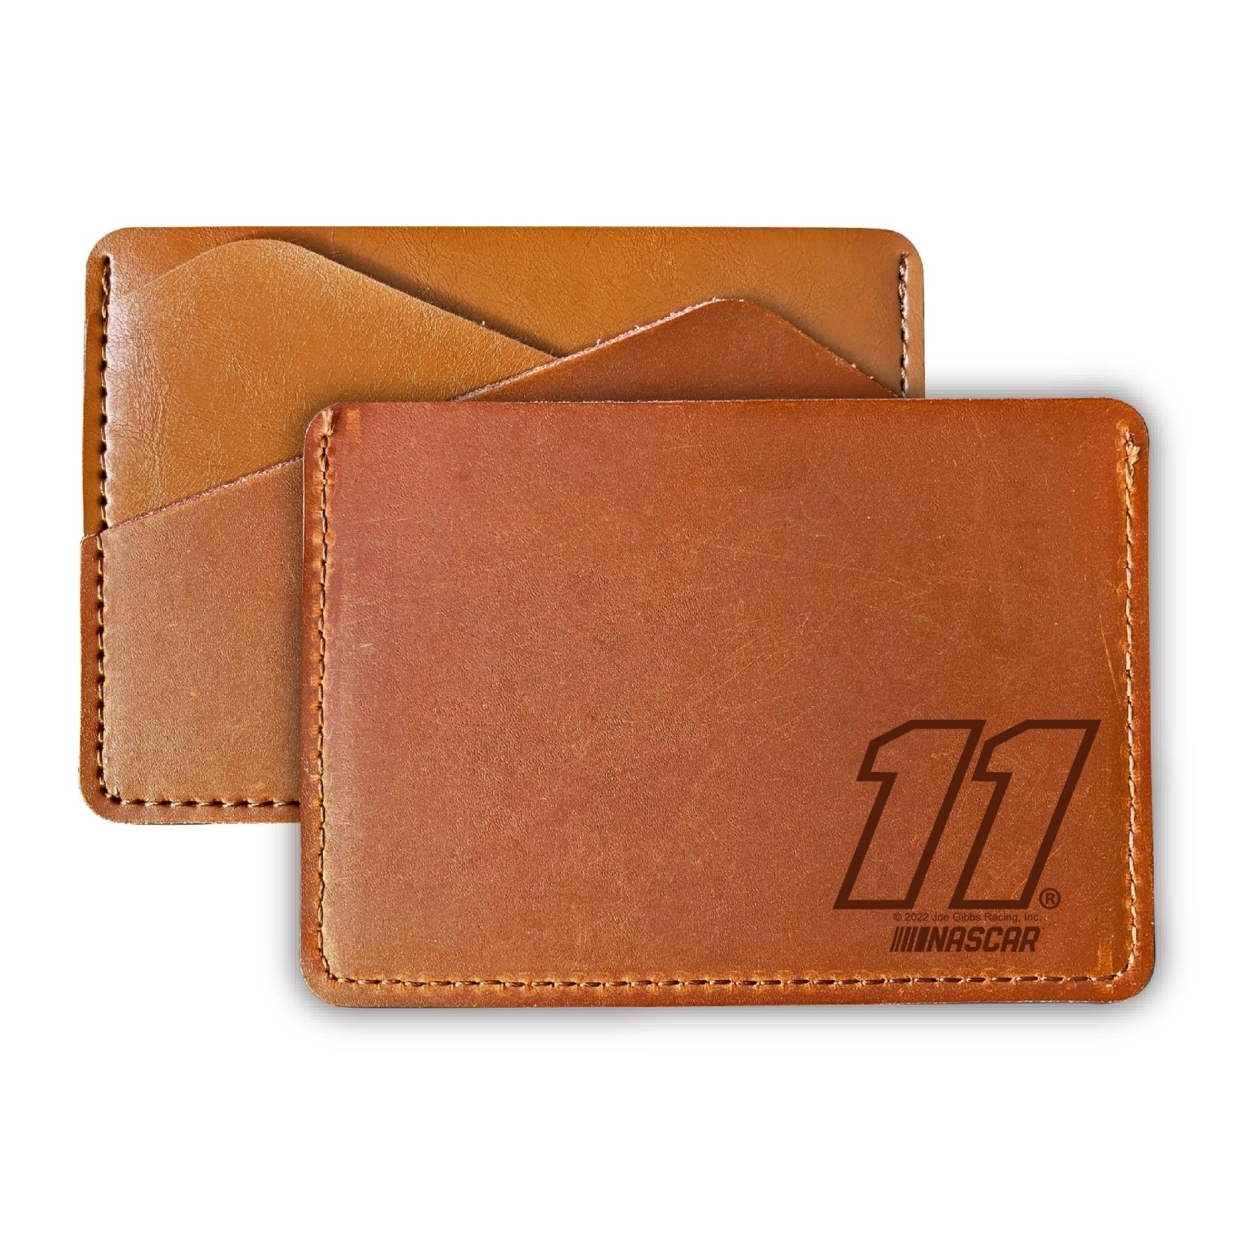 Nascar #11 Denny Hamlin Leather Wallet Card Holder New For 2022